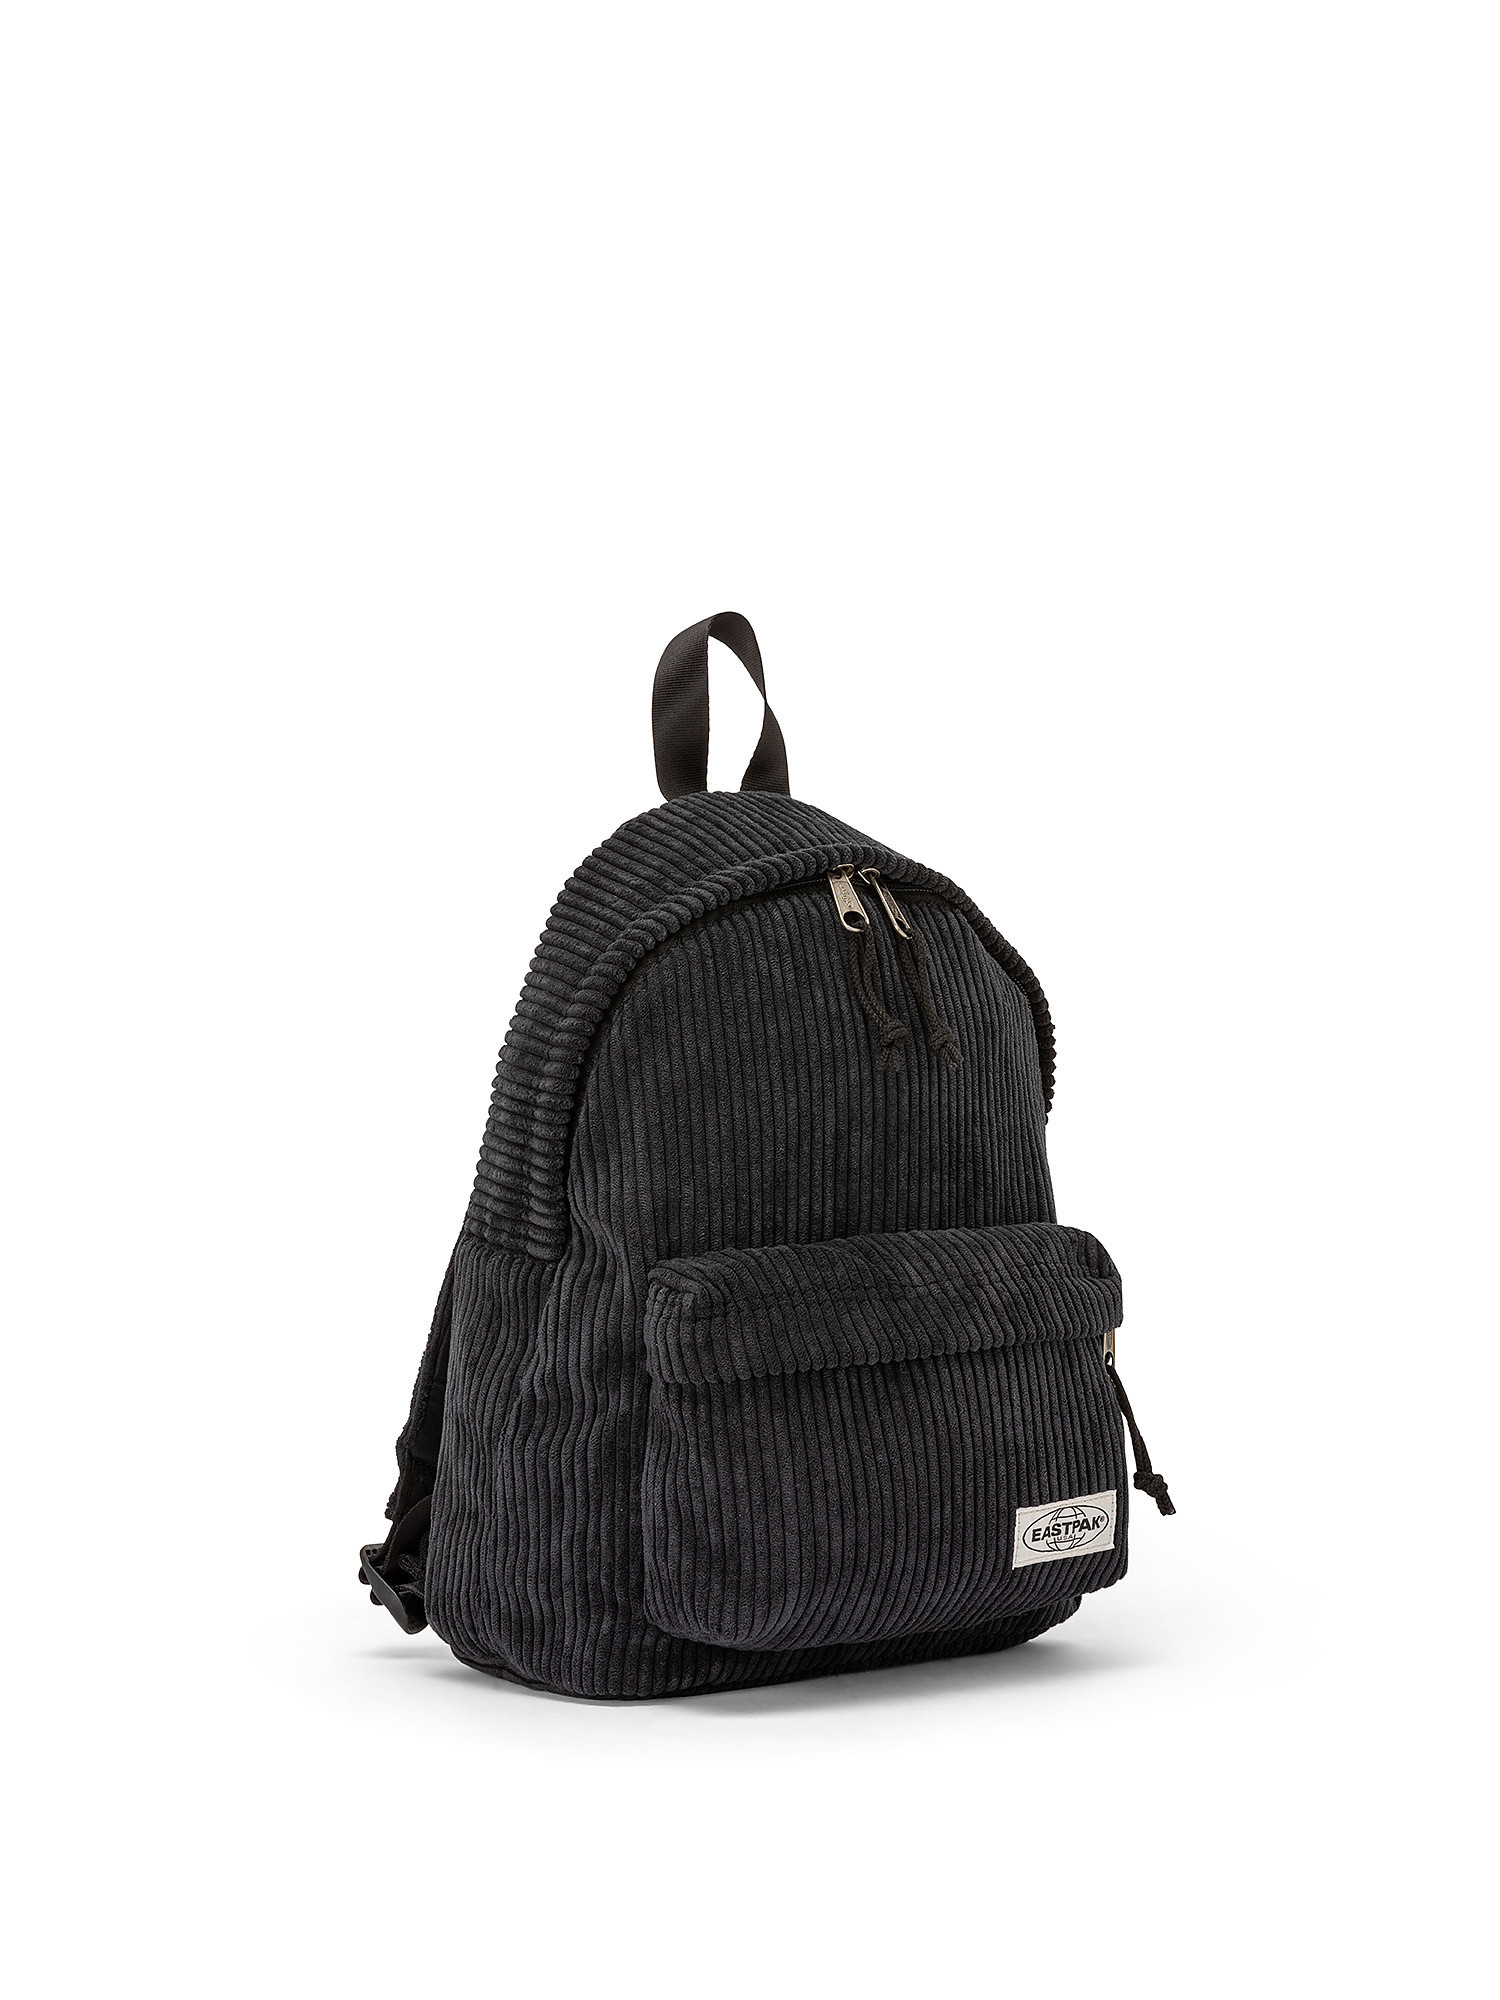 Mini backpack with tablet pocket, Black, large image number 1